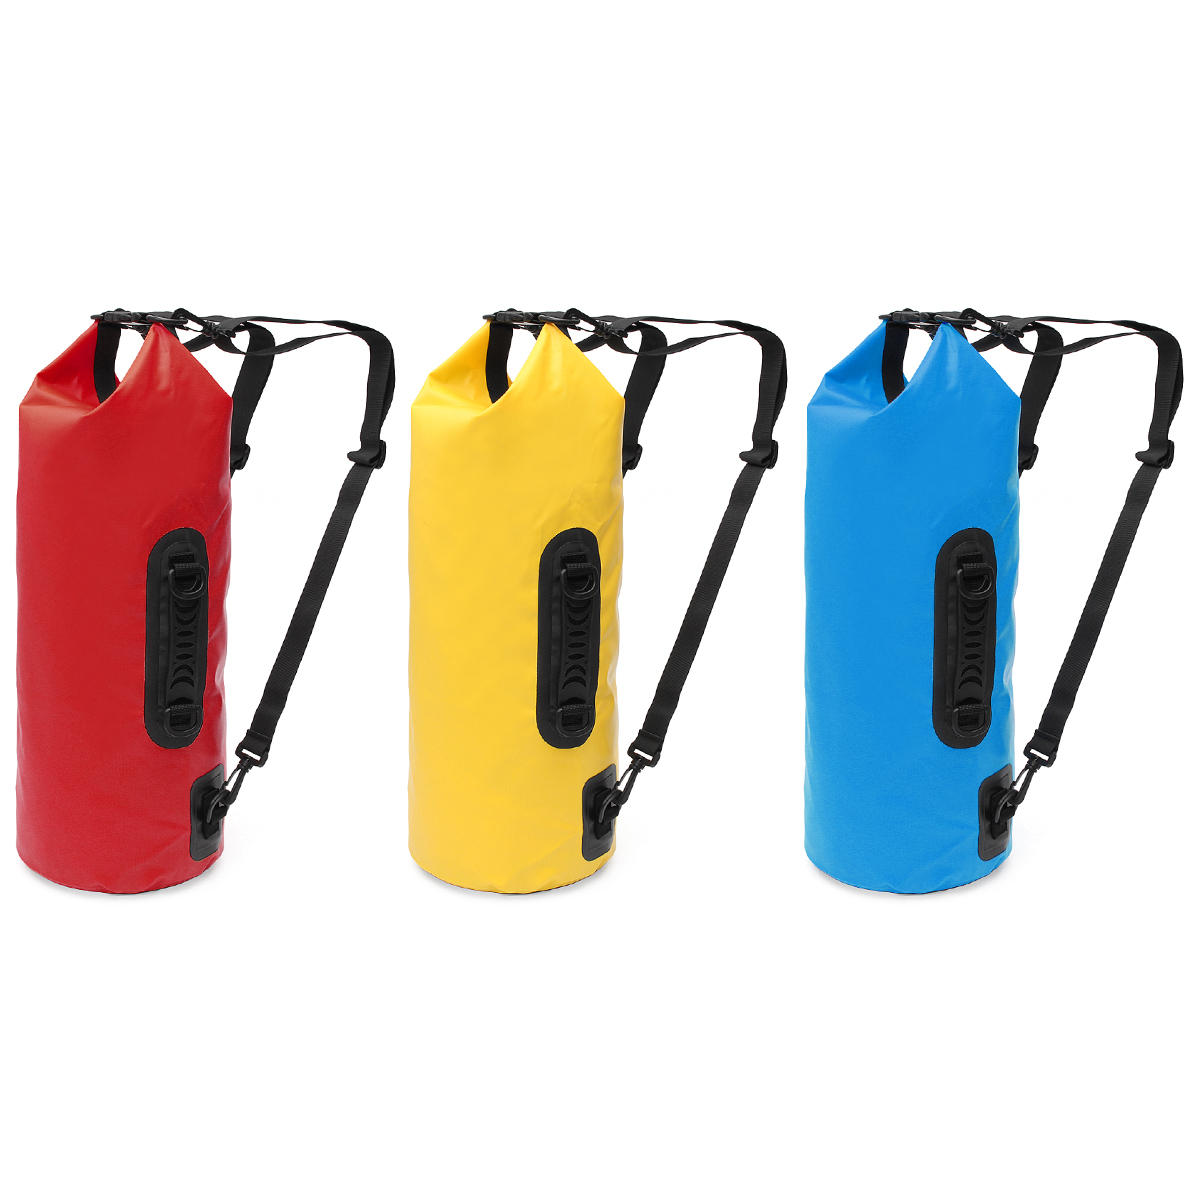 5L Sportowy wodoodporny suchy pojemnik na plecak torba na zamówienie dla aktywności na świeżym powietrzu, pływania i kempingu.